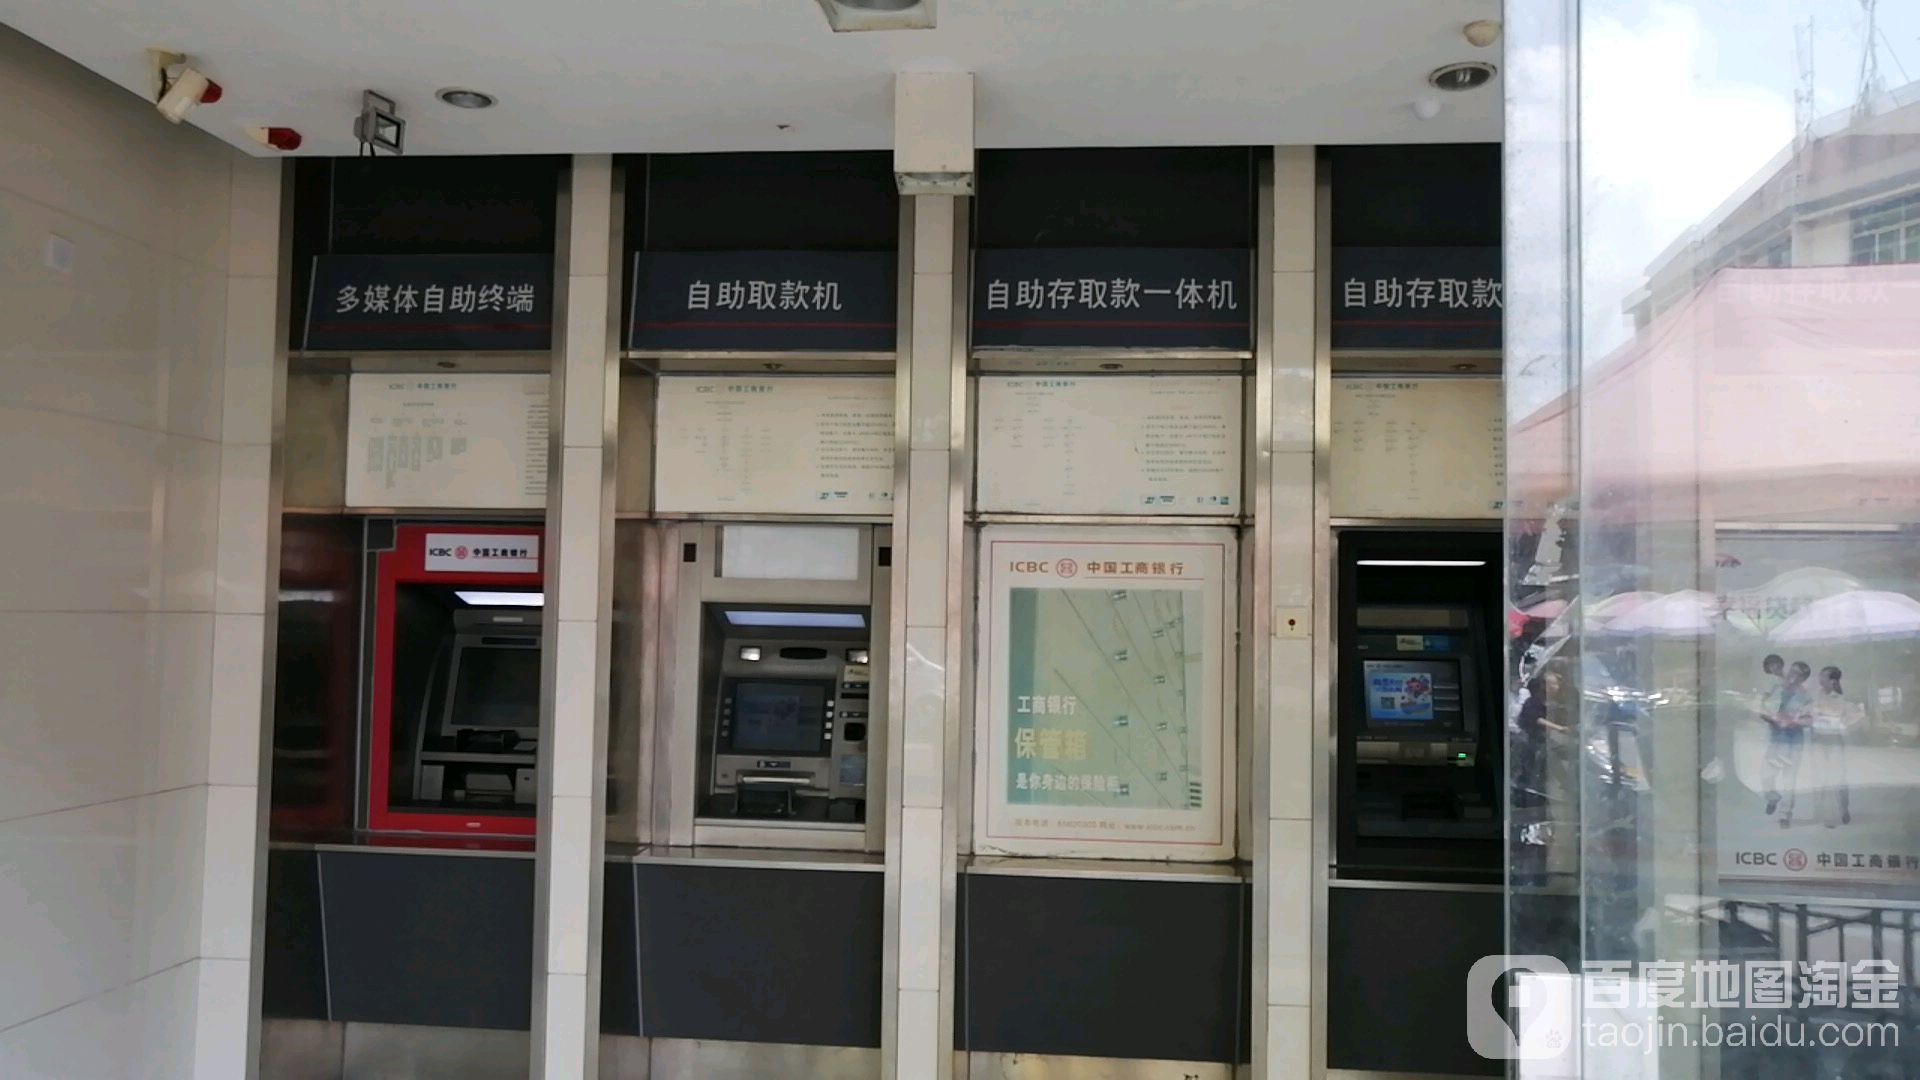 中国工商银行24小时自助银行(泉州分行永春支行城东街)